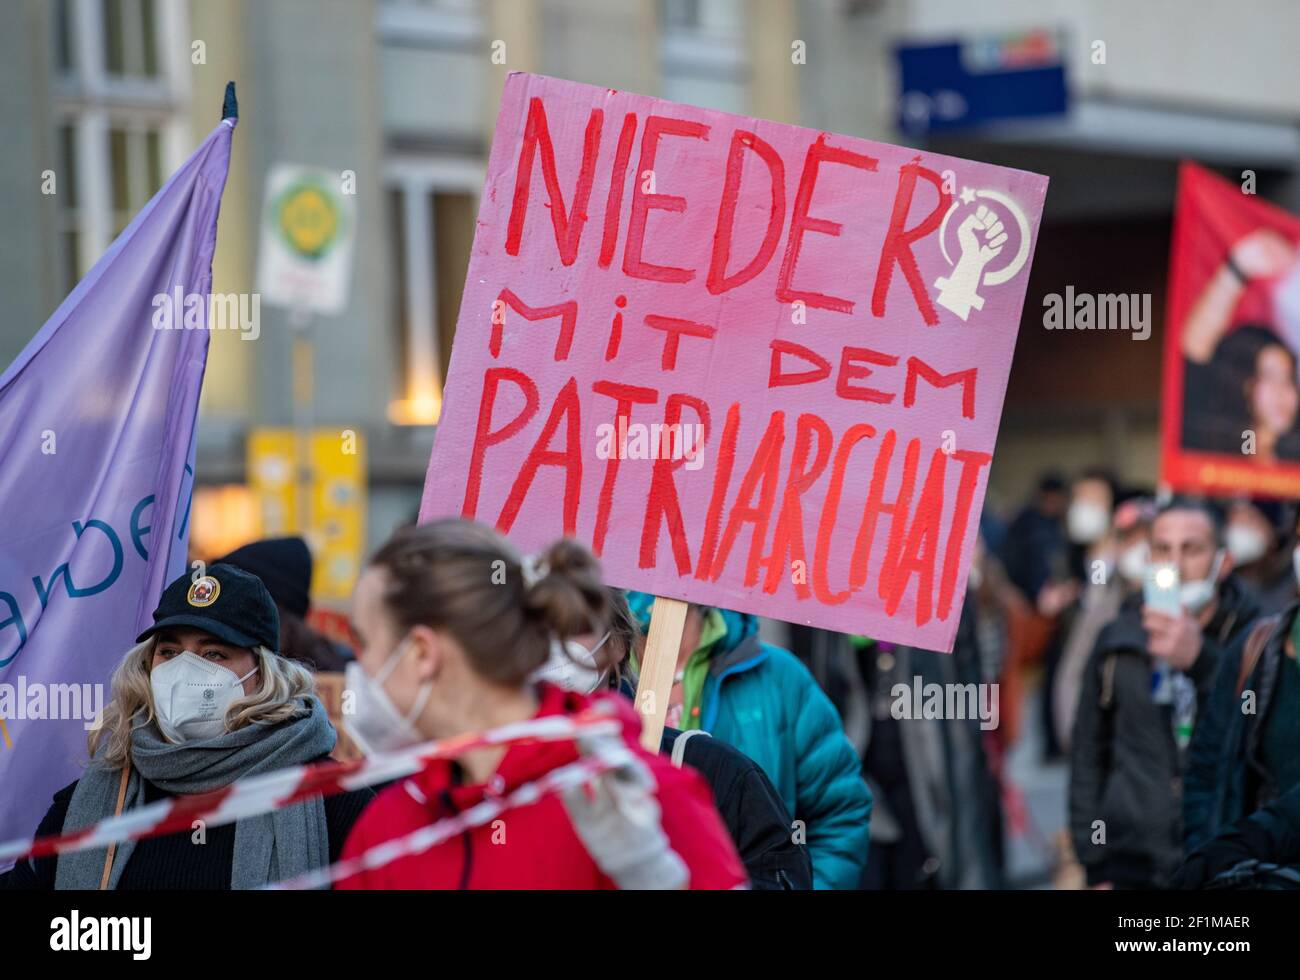 Demonstrantin hält Schild mit der Aufschrift: ' Nieder mit dem Patriarchat '. Am Weltfrauentag, dem 8.3.2021 haben sich in München um die 1000 Menschen versammelt, um für das Recht auf Schwangerschaftsabbrüche, gegen den Gender-Pay-Gap, Sexismus und Femizide zu demonstrieren. - On the international women's day March 8 2021 around 1000 people joined a demonstration in Munich, Germany to protest against sexism, the gender-pay-gap and femicides. (Photo by Alexander Pohl/Sipa USA) Stock Photo